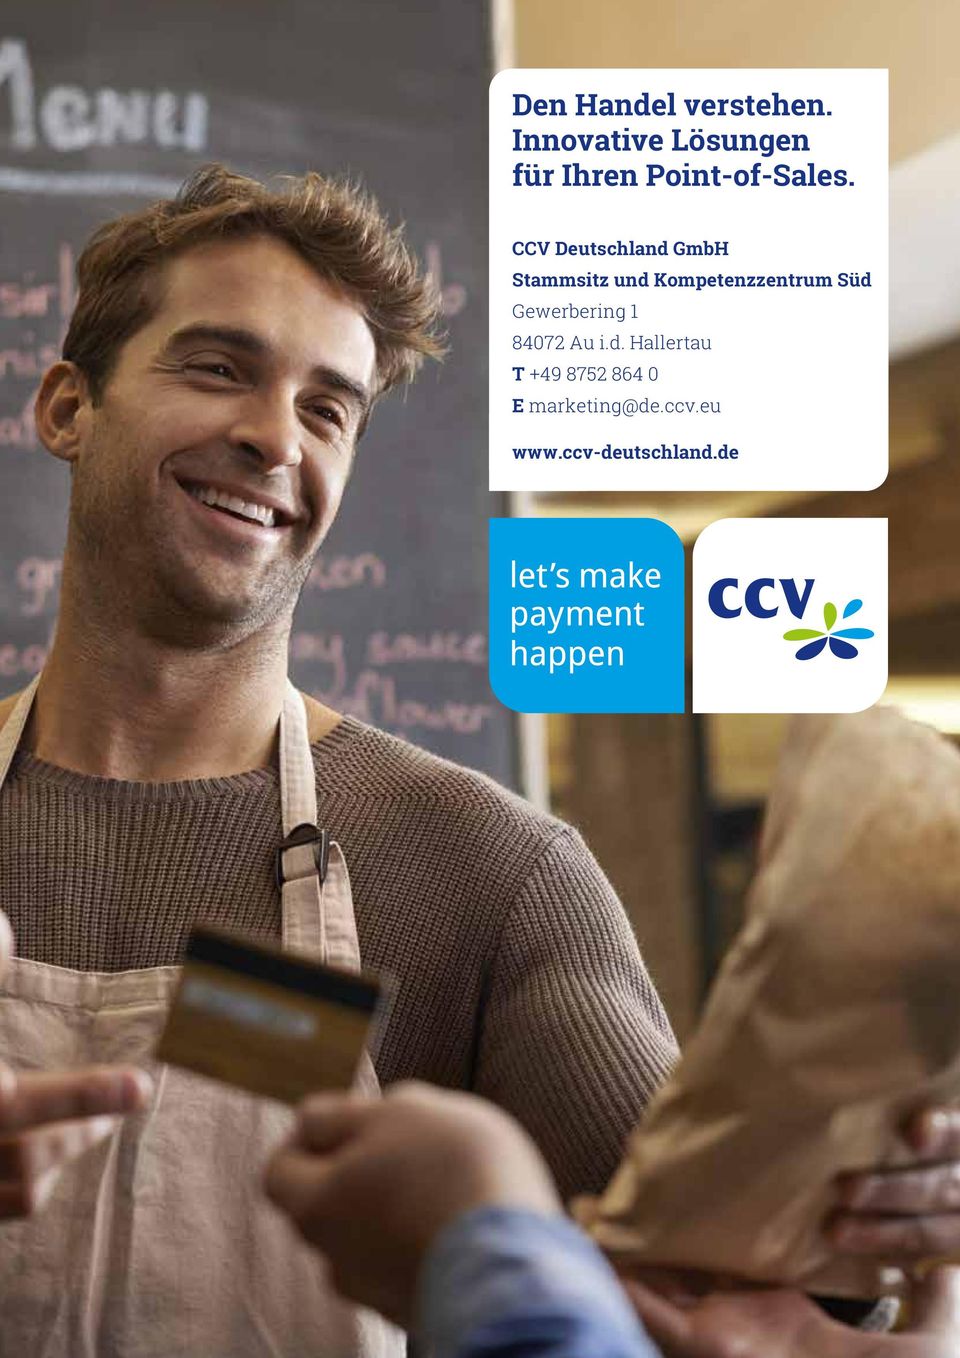 CCV Deutschland GmbH Stammsitz und Kompetenzzentrum Süd